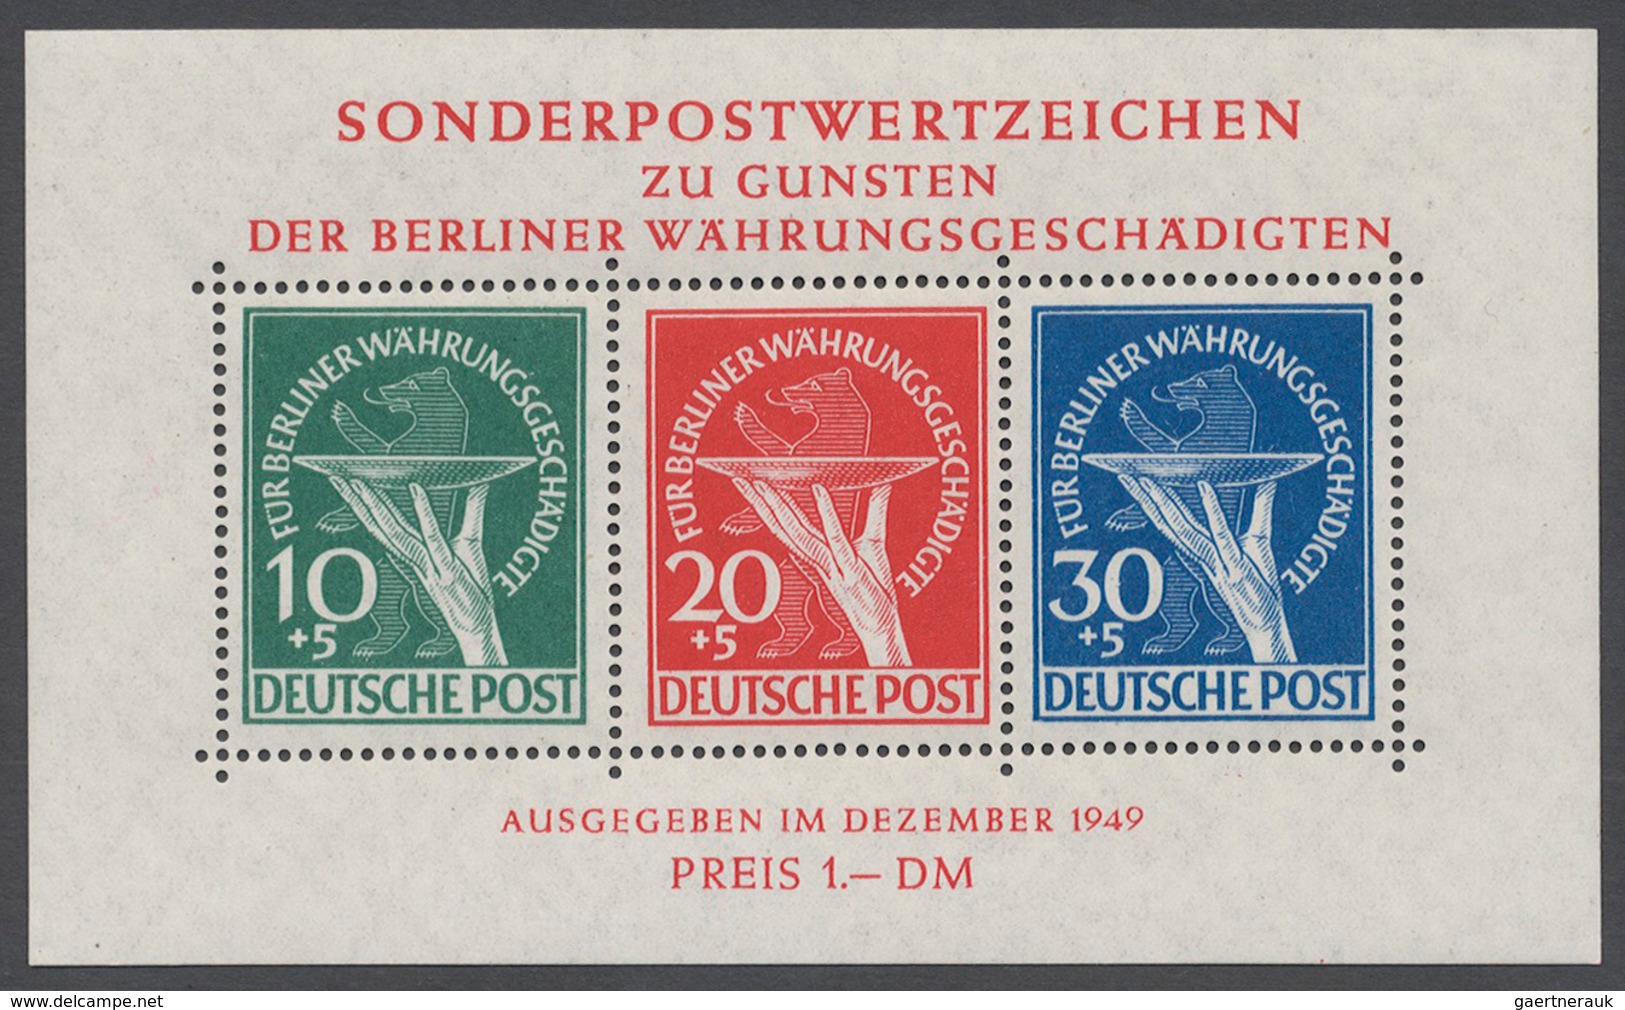 Bundesrepublik und Berlin: 1945/2000, Bizone/Bund/Berlin großer Lagerbestand mit etwas DDR, etwa übe